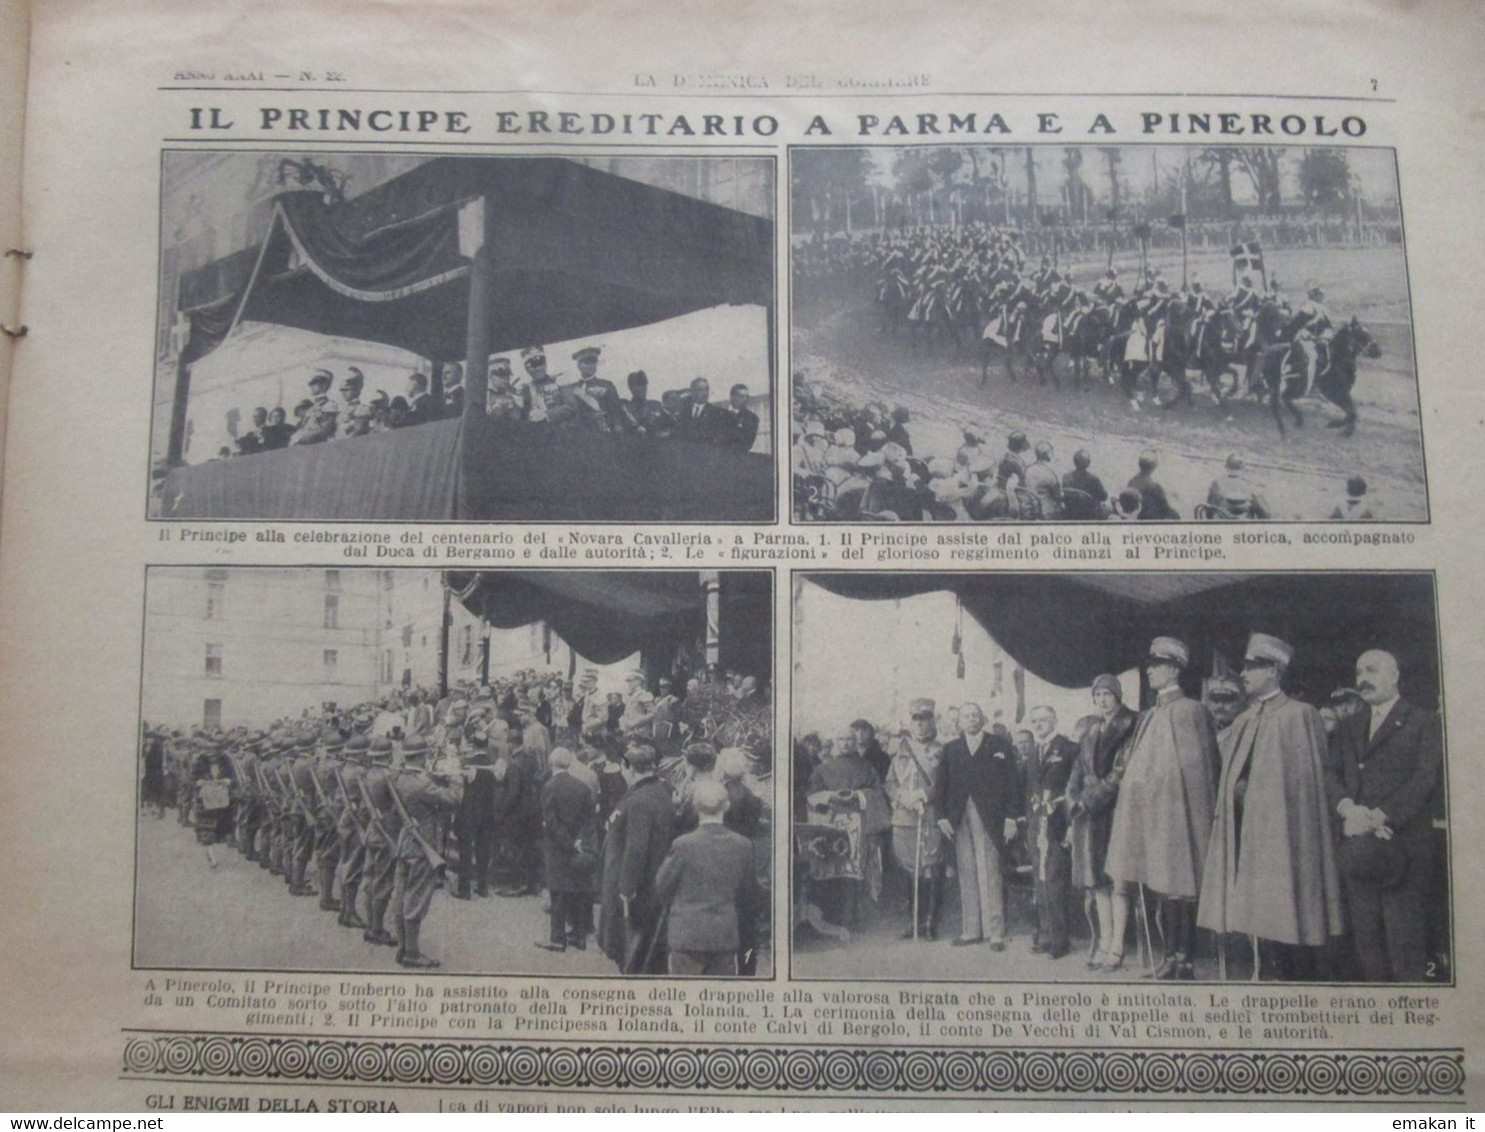 # DOMENICA DEL CORRIERE N 22 1929 SOVRANI D'ITALIA A RODI / CAPRINO VERONESE / PARMA / PINEROLO - Prime Edizioni